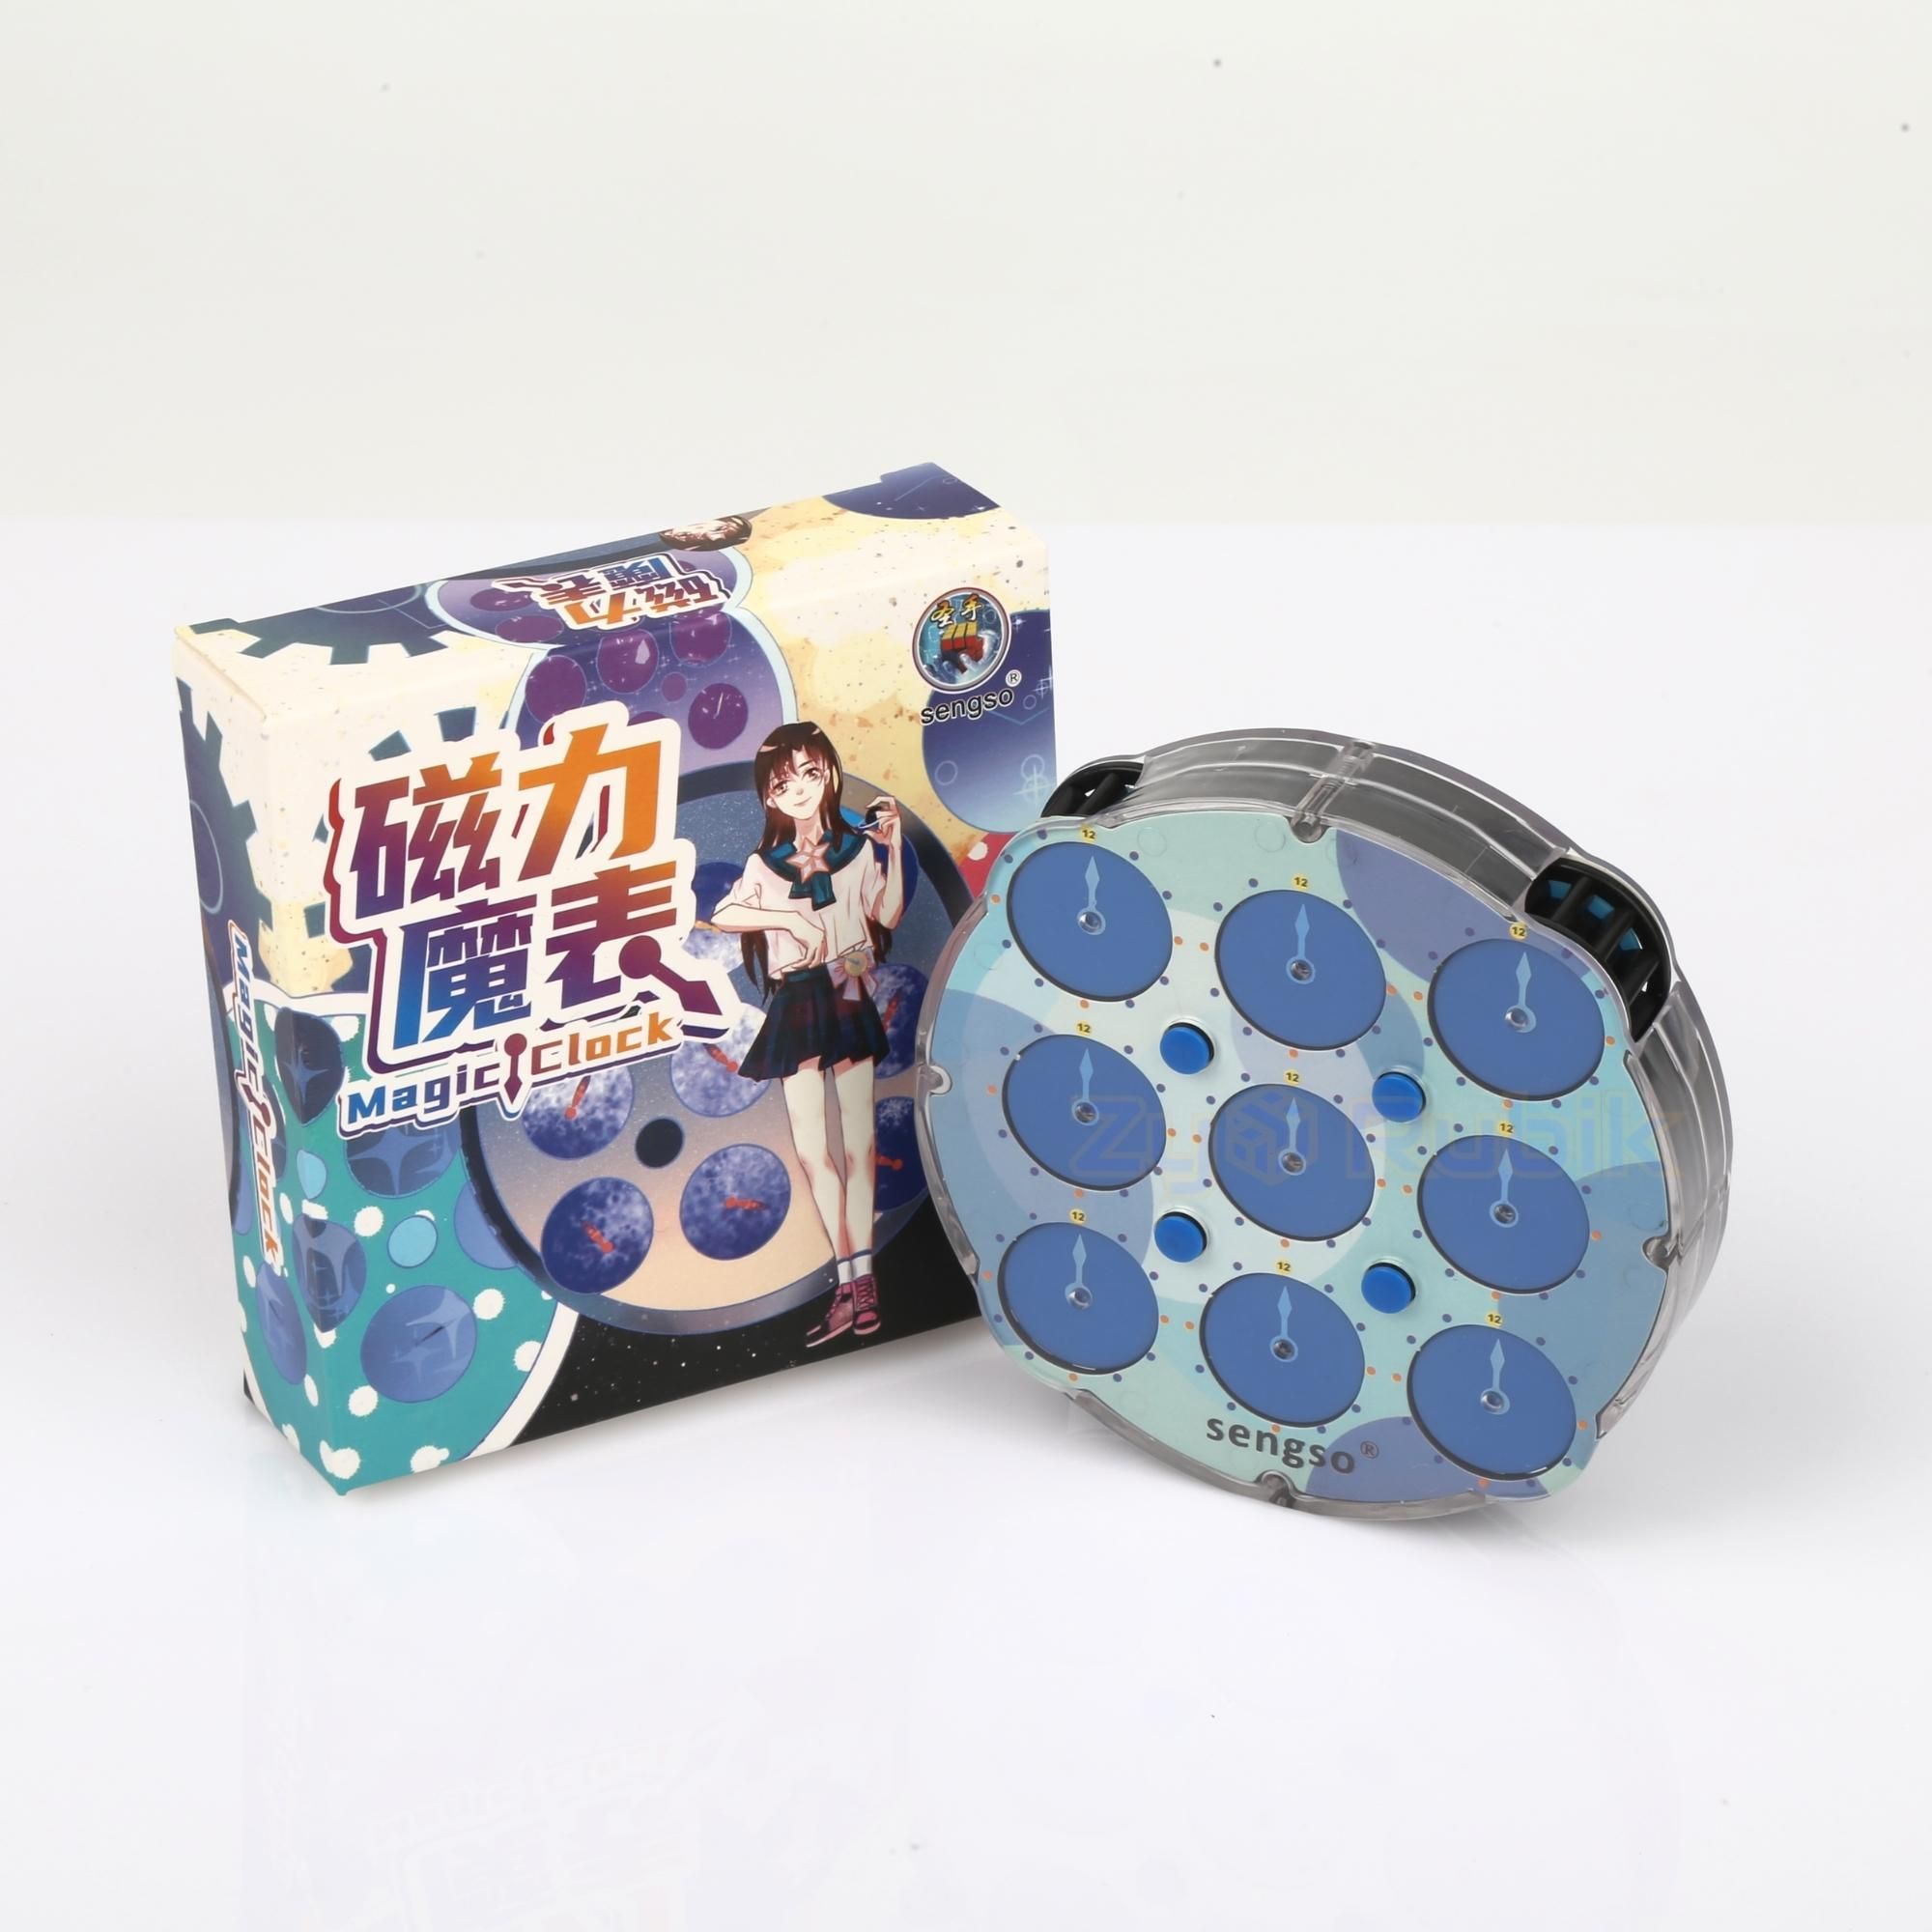  Rubik Clock shengshou Magnetic - Đồng Hồ Nam Châm SengSo - Đồ Chơi Trí Tuệ - Zyo Rubik 